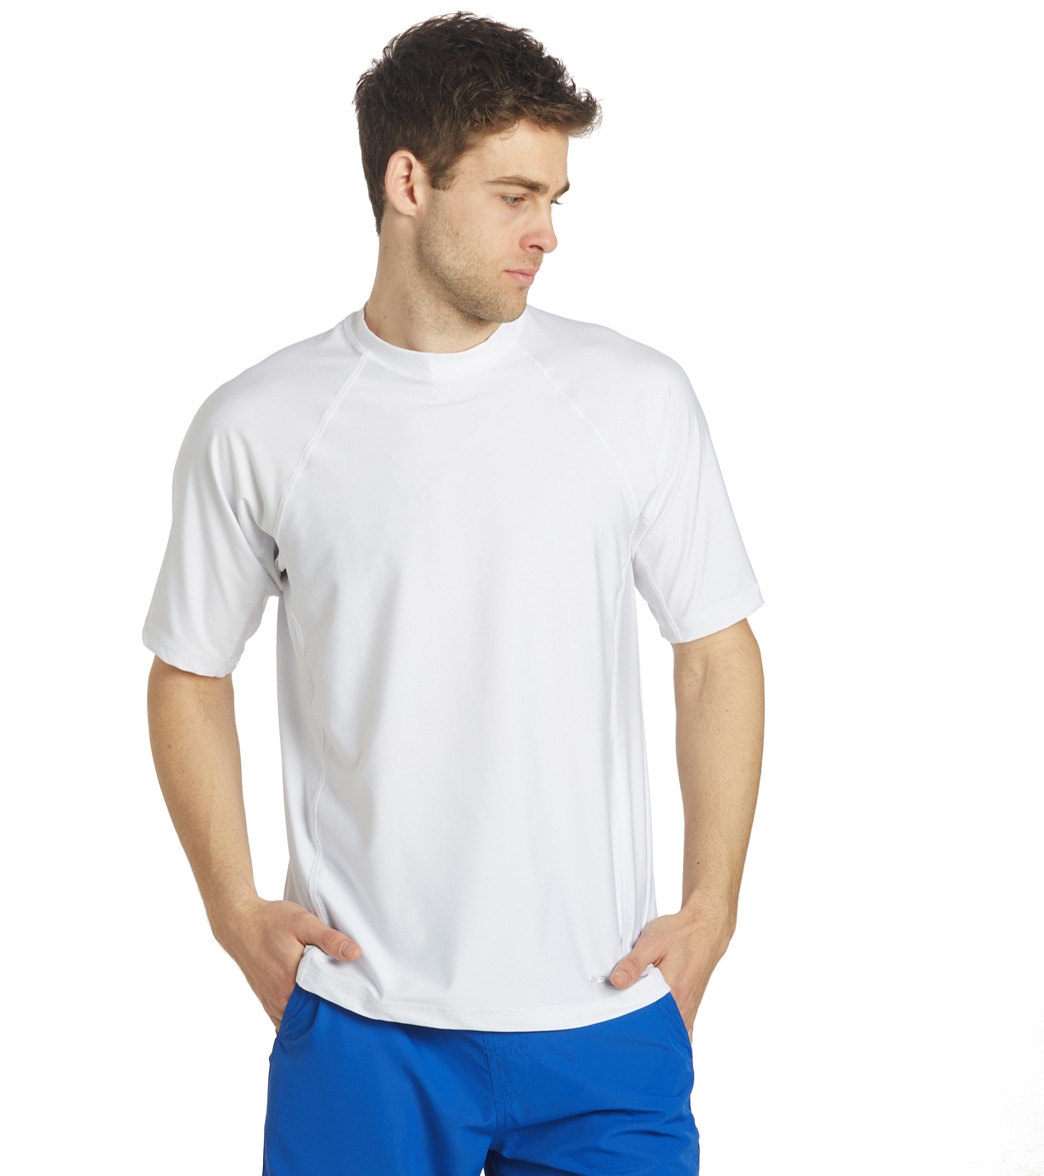 Sporti Men's Short Sleeve Shirt Upf 50+ Comfort Fit Rashguard - White Medium - Swimoutlet.com